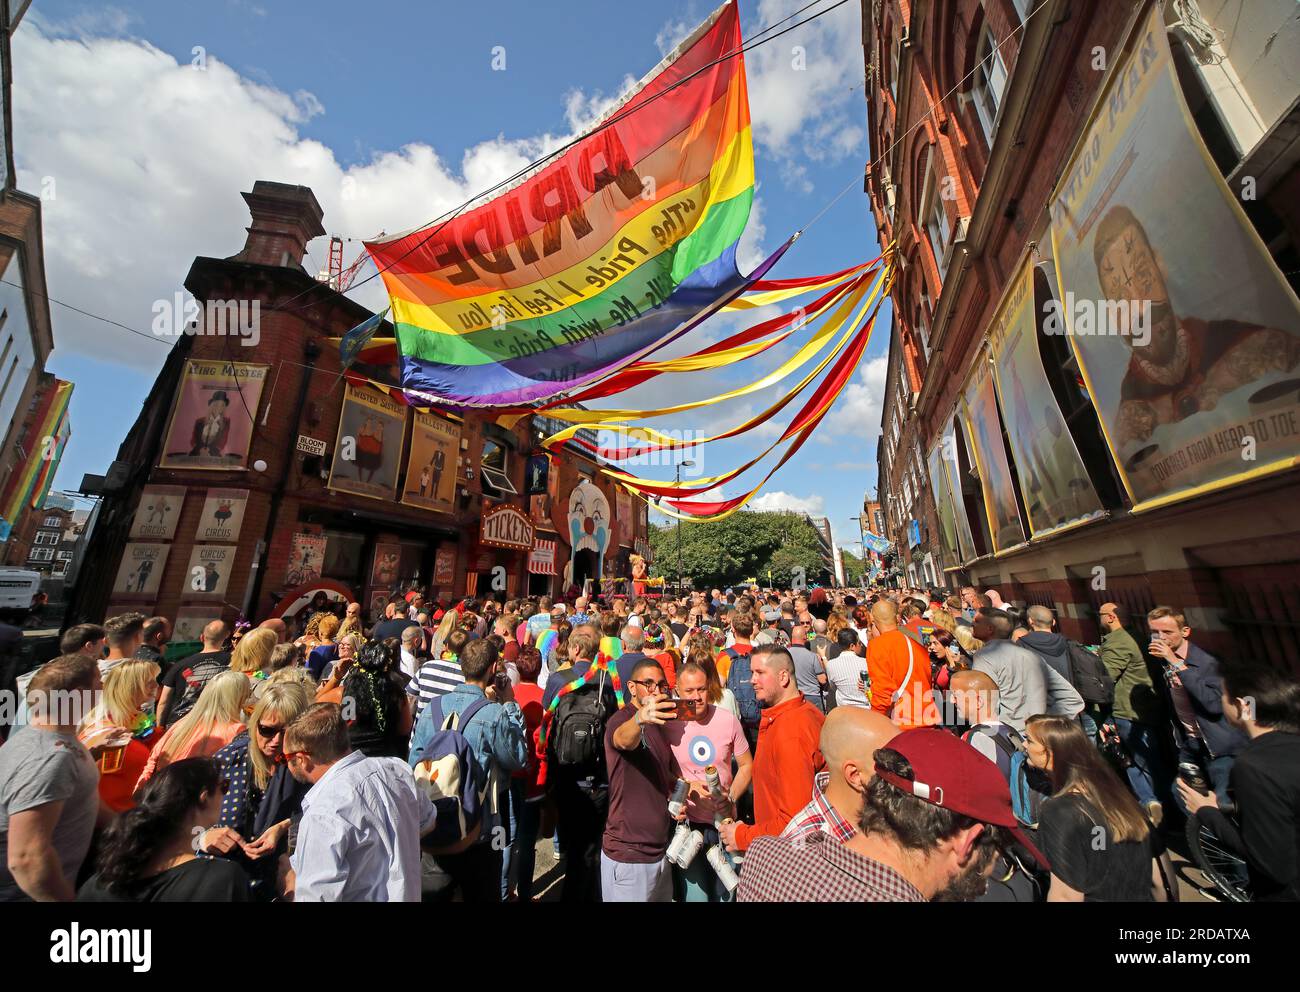 Das Manchester Pride Party Festival in der Bloom Street, mit dem der Zirkus gefeiert und Freunde, Besucher und Partner von MCR LGBTQ+ begrüßt werden, August 25. 2018 Stockfoto